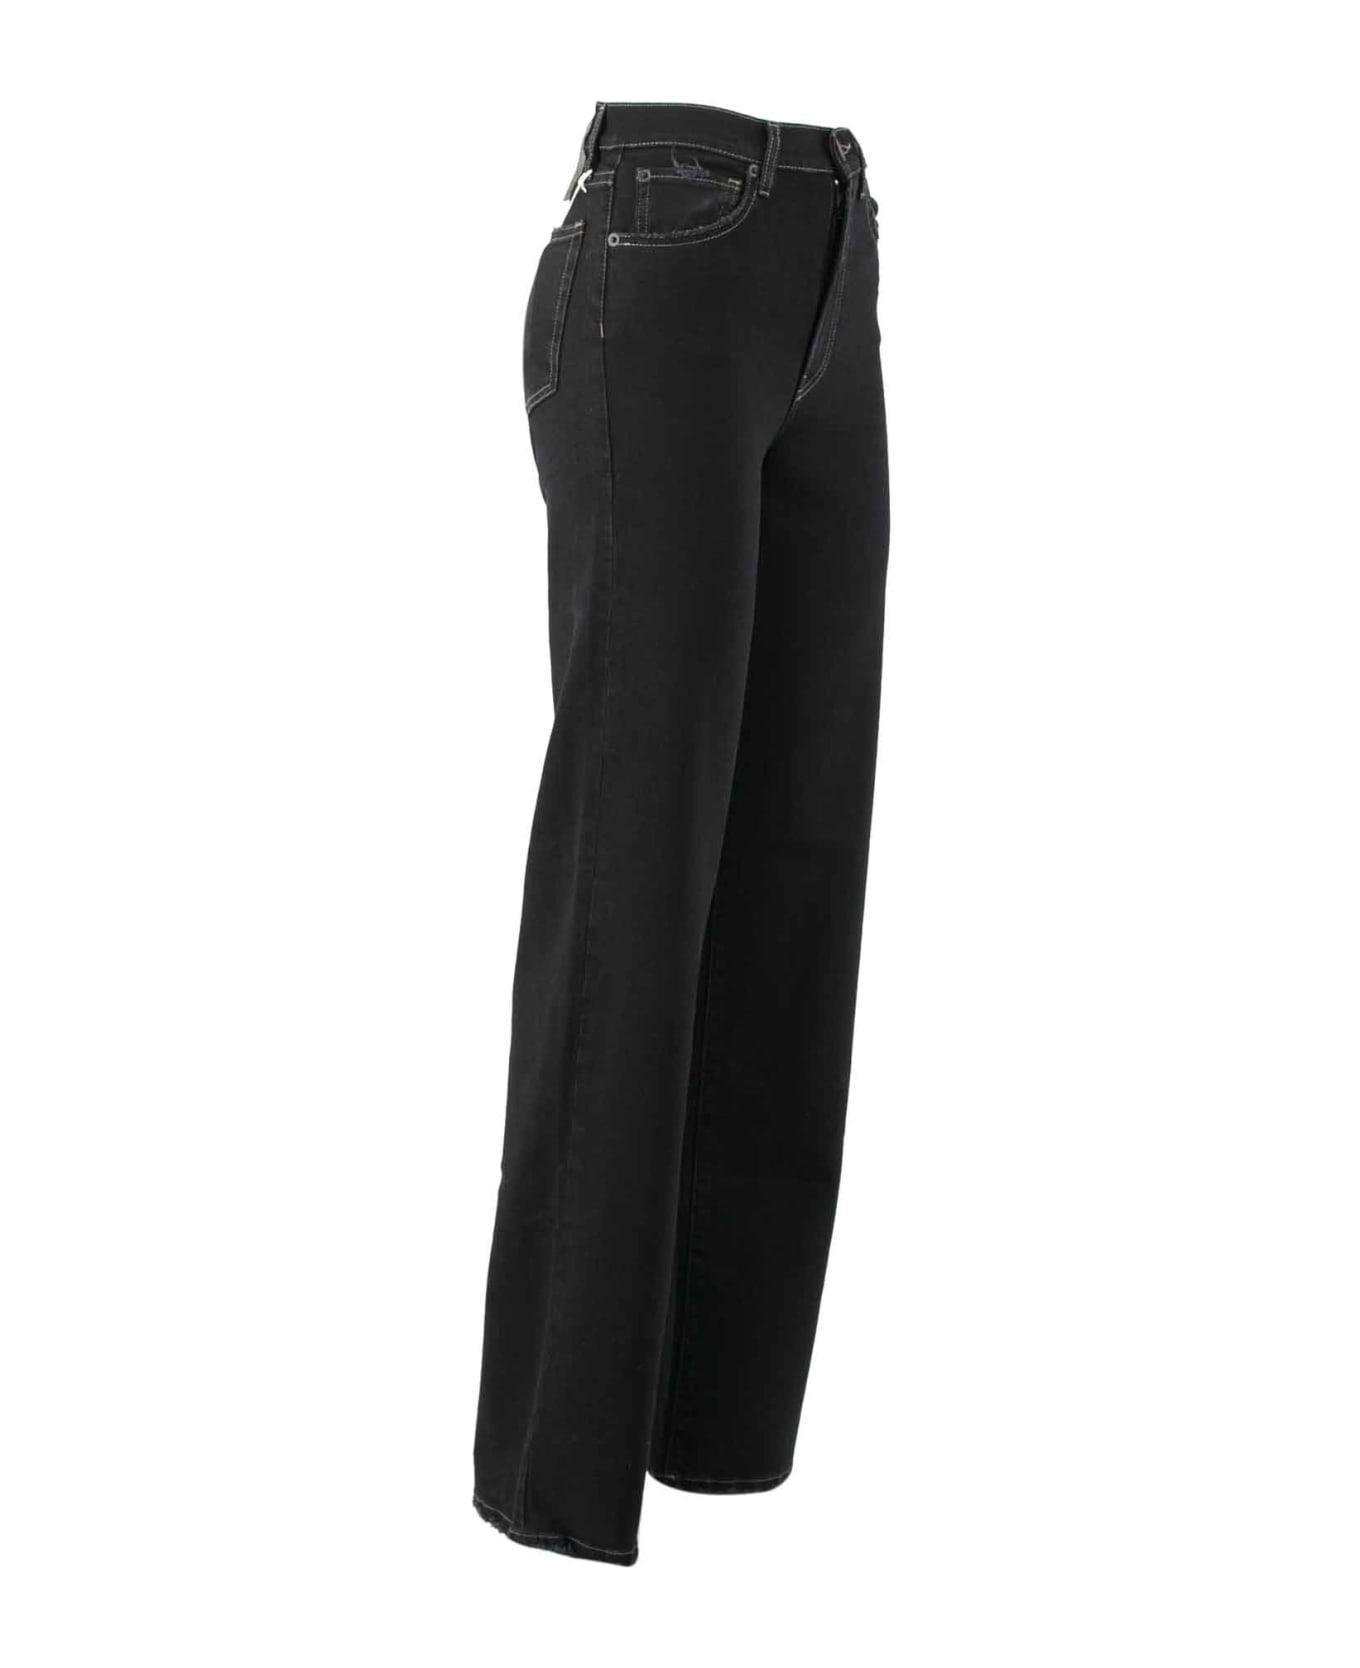 3x1 Cotton Jeans - Black